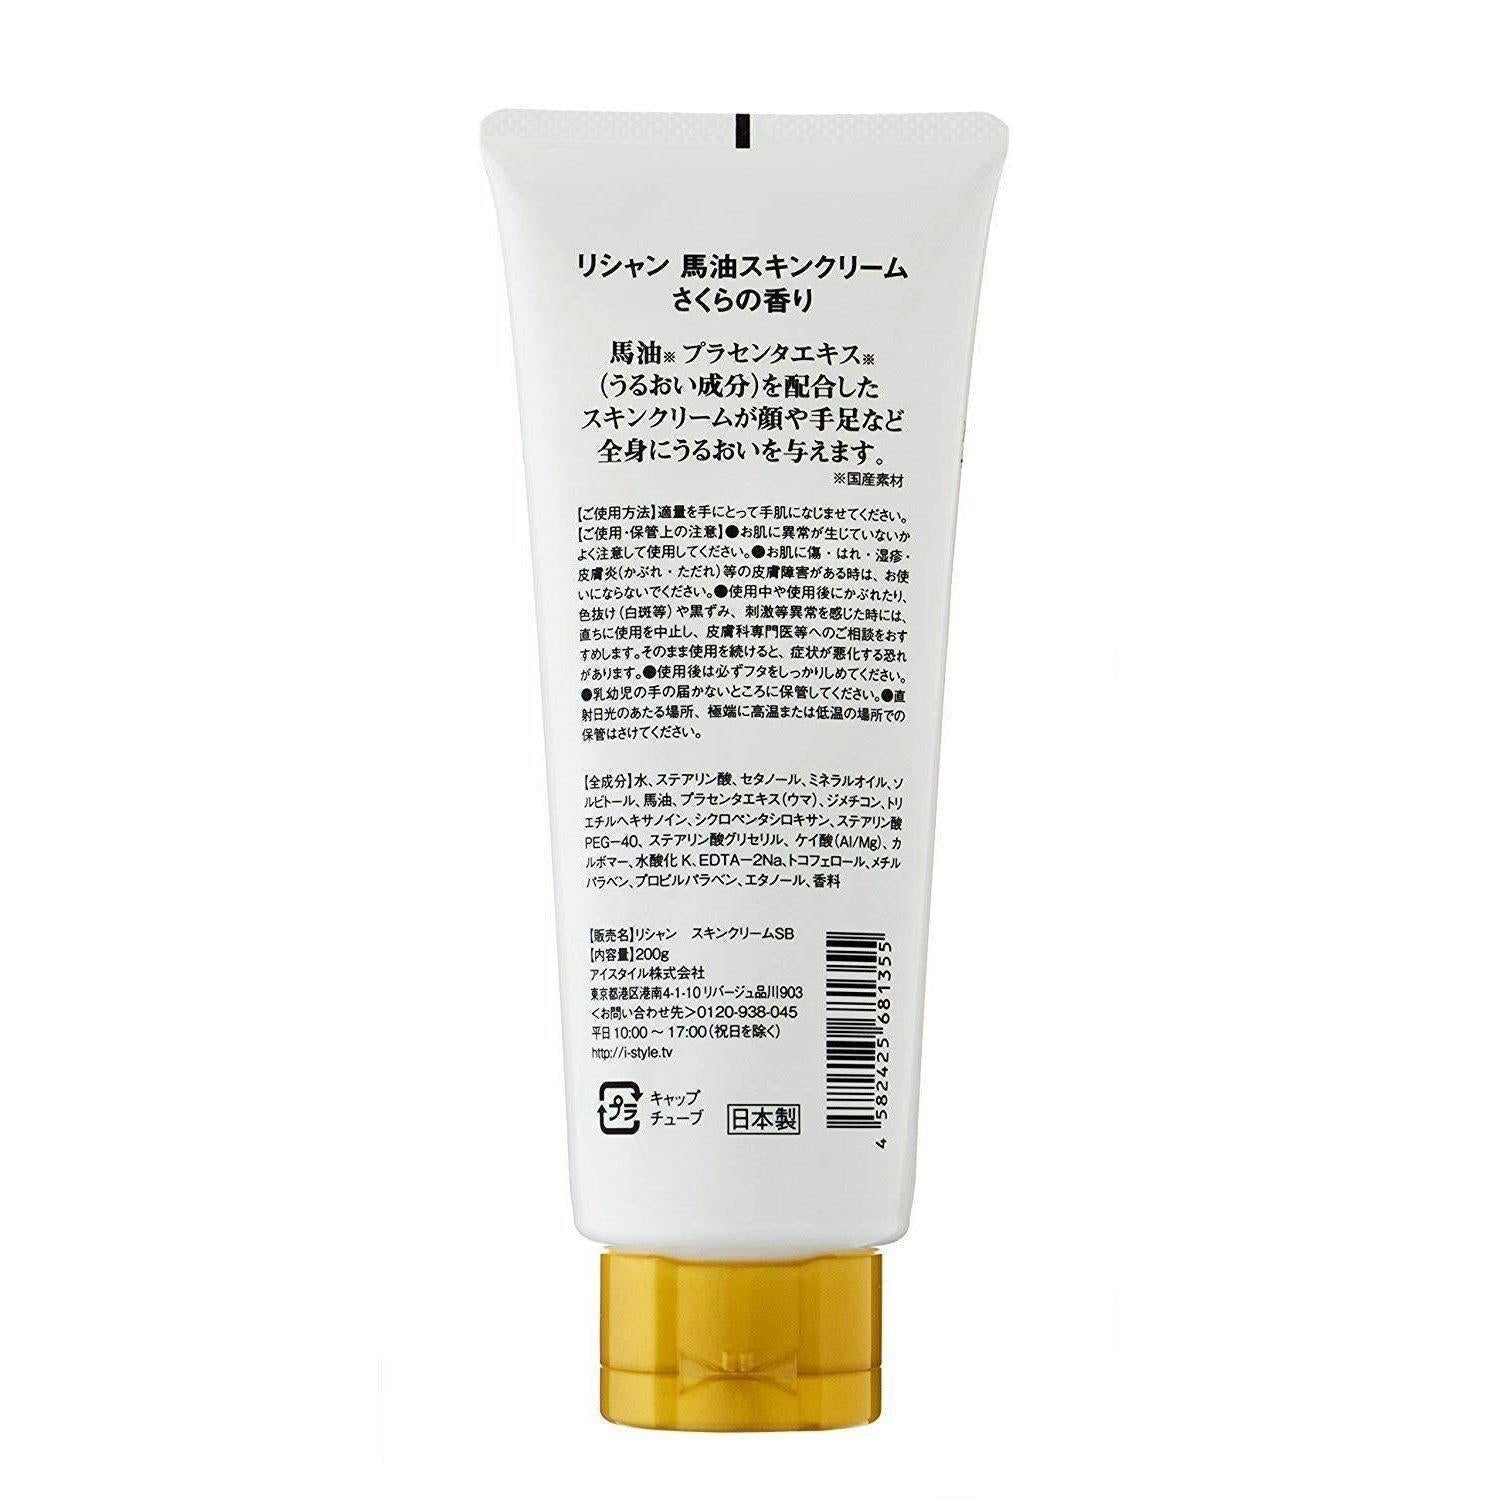 Lishan Bayu Oil Skin Cream 200g